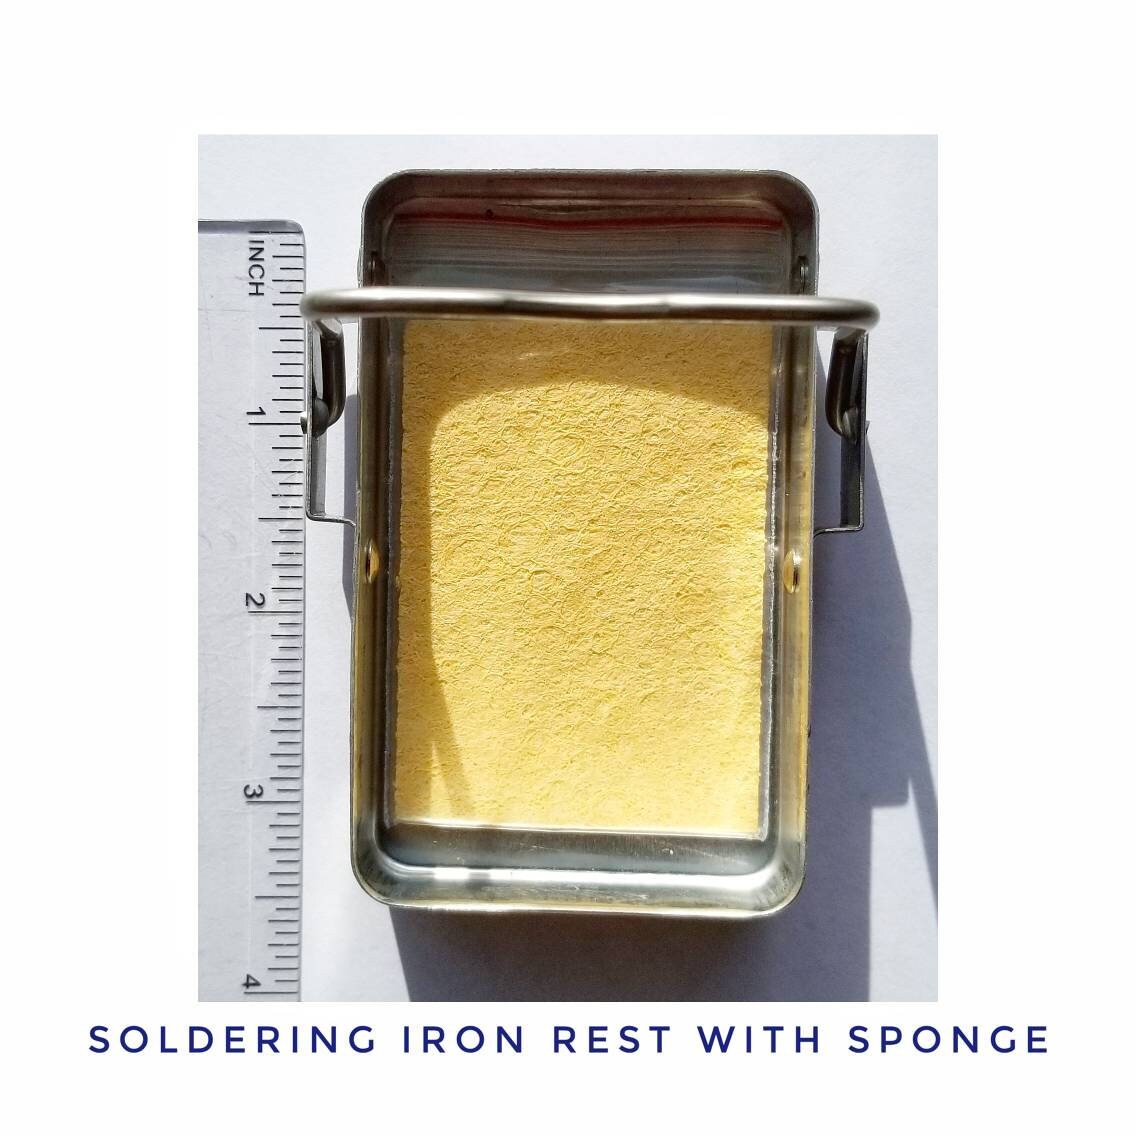 Solder iron help : r/StainedGlass